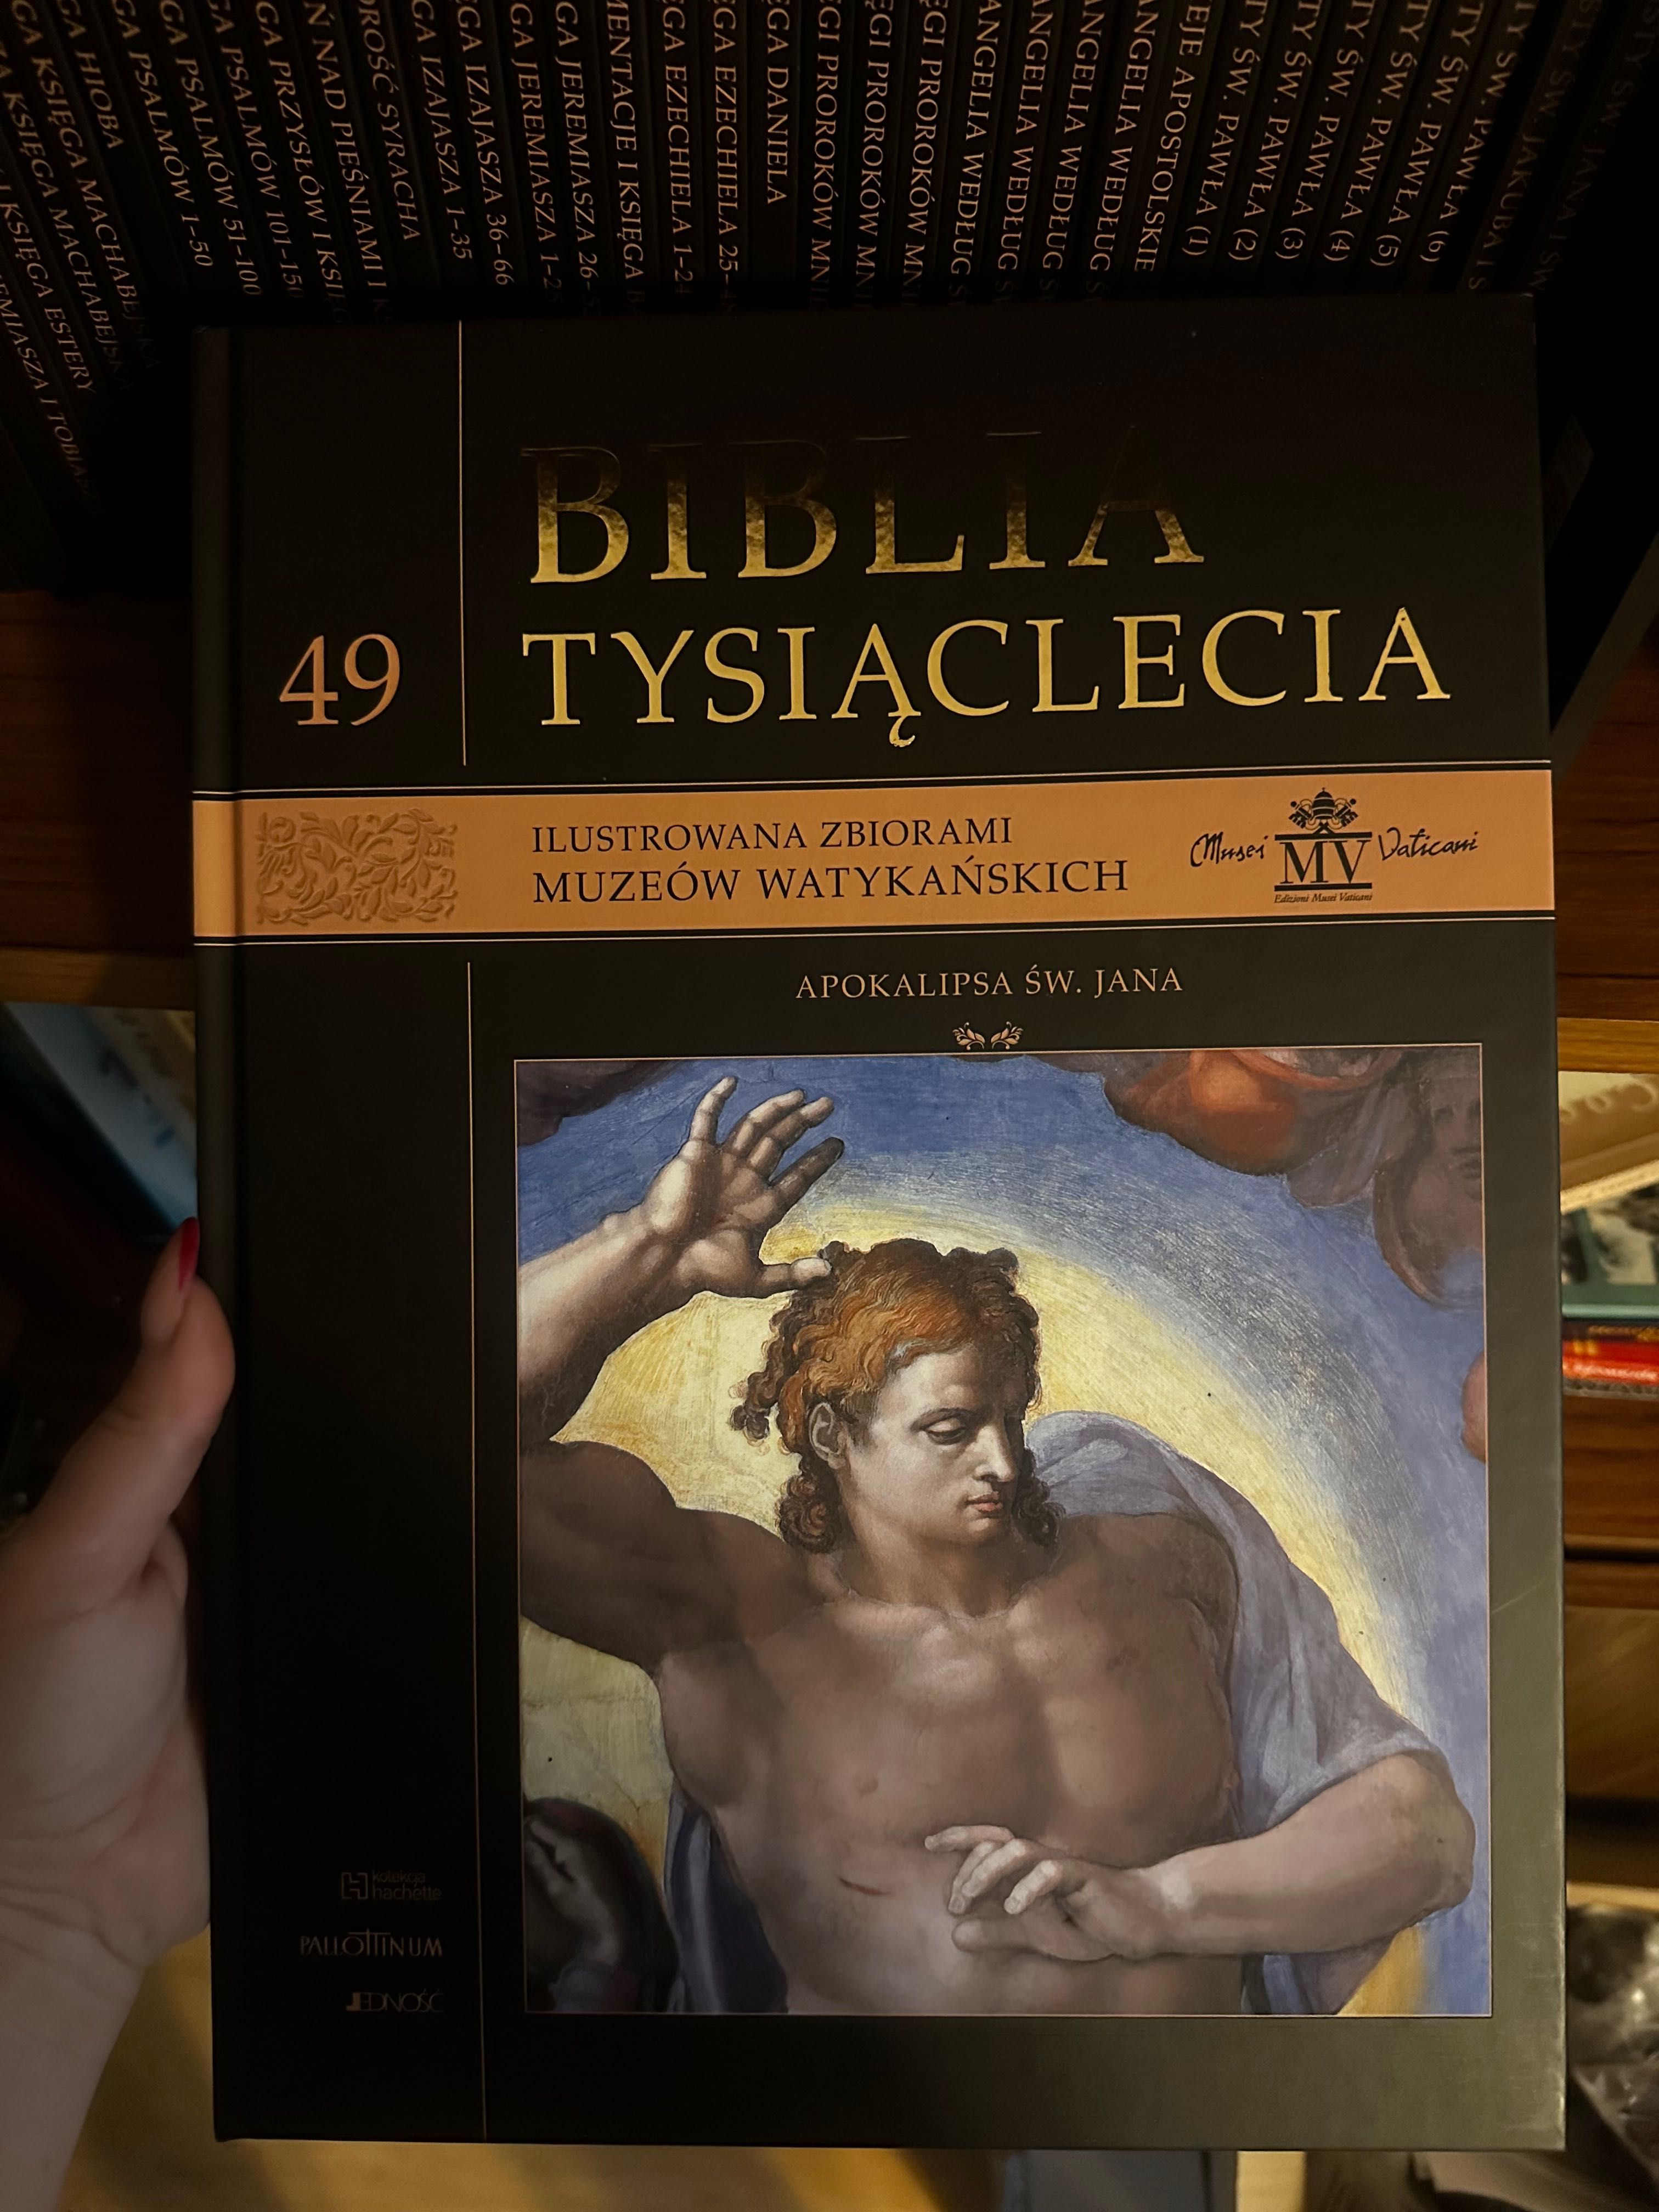 Biblia tysiąclecia ilustrowana zbiorami muzeów watykańskich tom 1-50